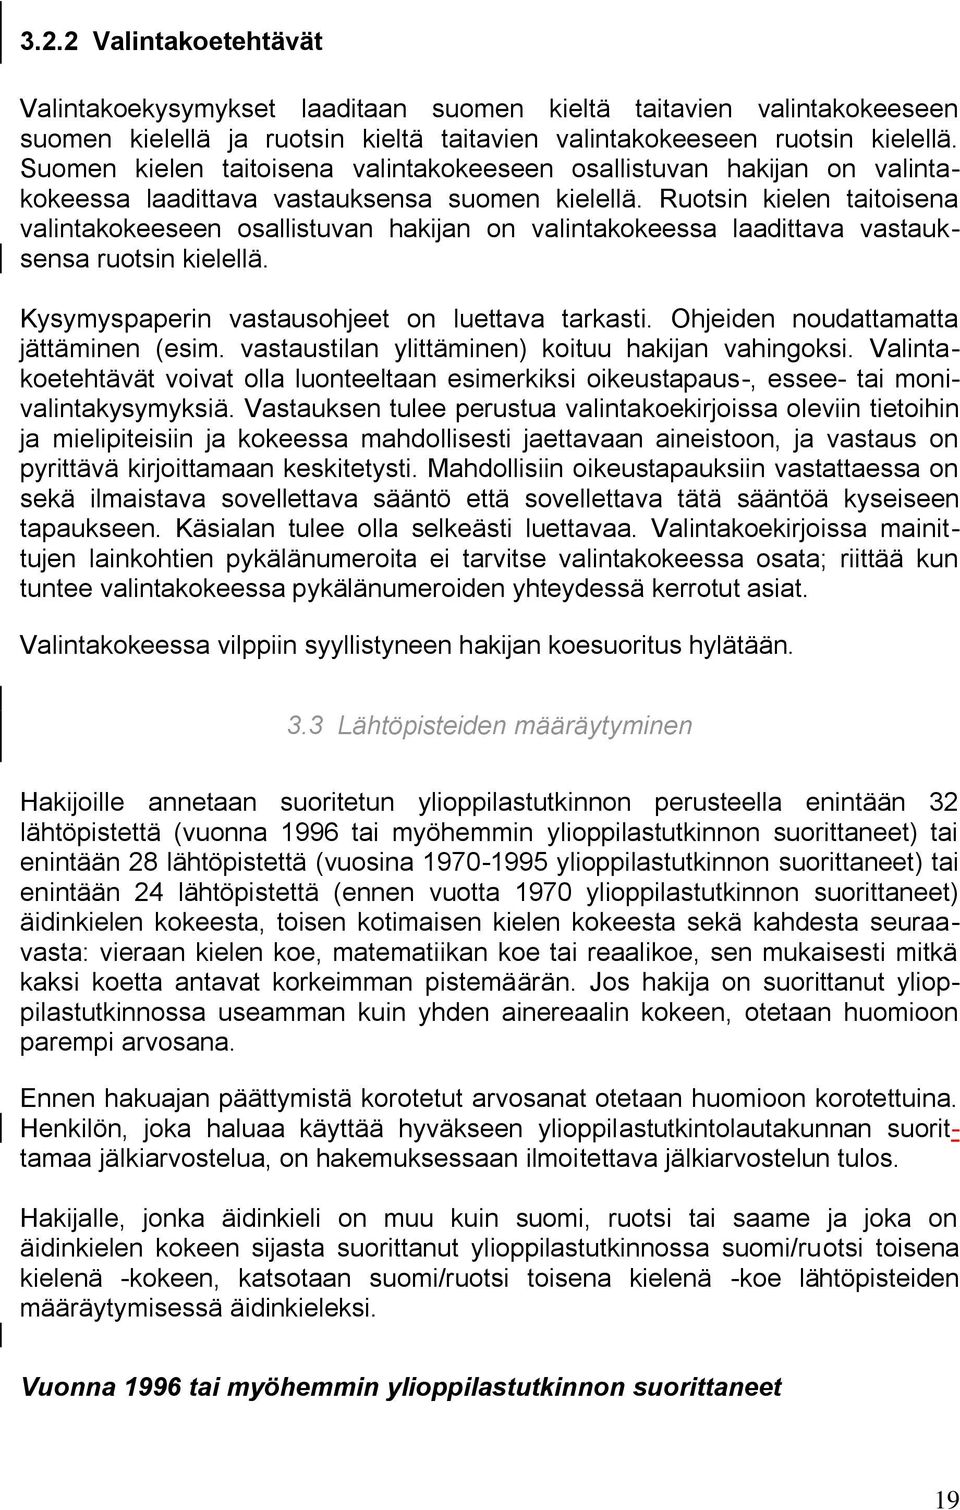 Ruotsin kielen taitoisena valintakokeeseen osallistuvan hakijan on valintakokeessa laadittava vastauksensa ruotsin kielellä. Kysymyspaperin vastausohjeet on luettava tarkasti.